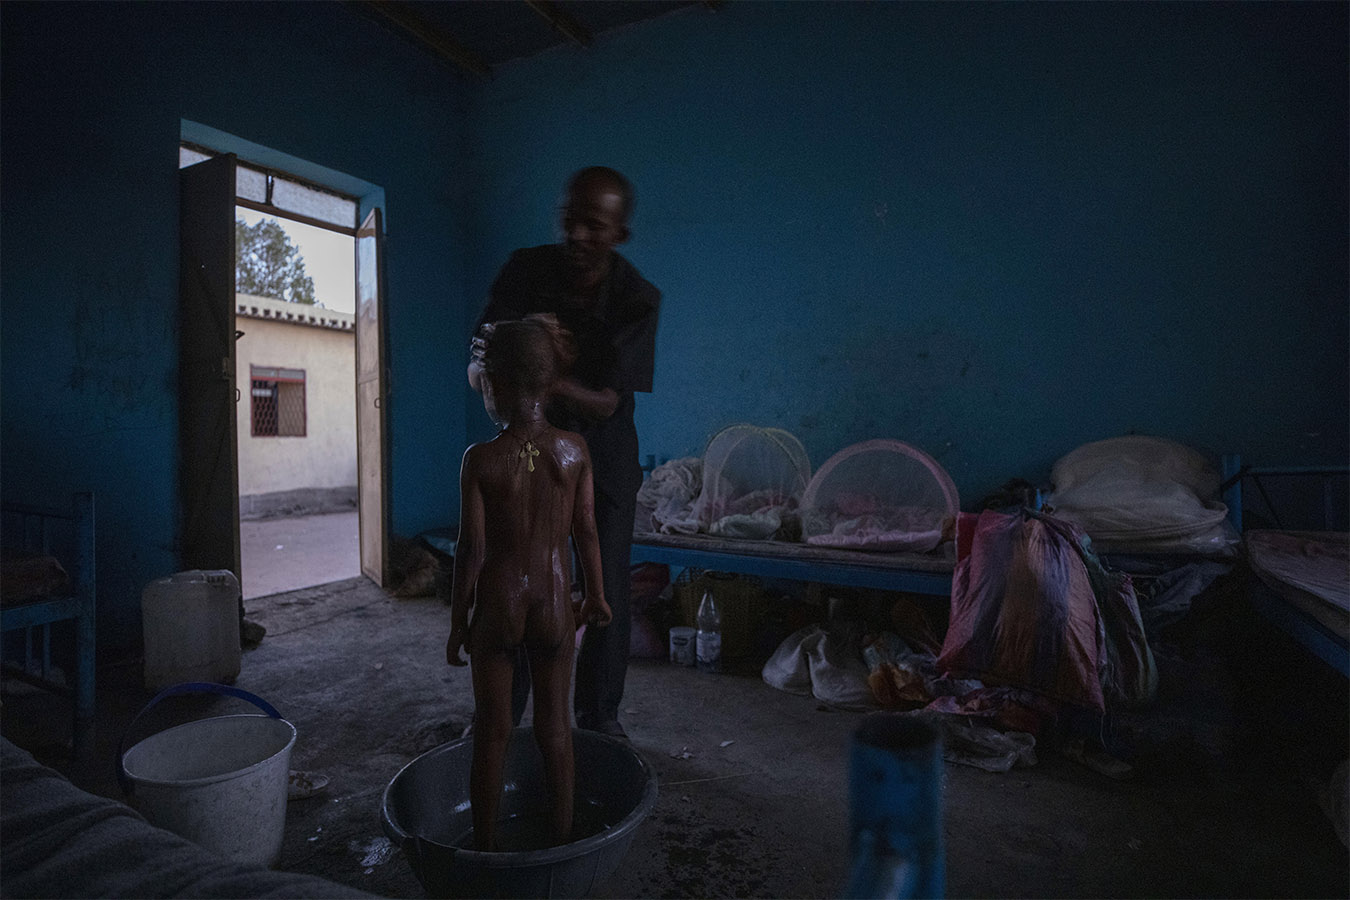 הפליט הטיגרי אברה קינף גאברמריאם, 40, מקלח את בנו בן ה-5 מישל, אחרי השכמה מוקדמת במחסה הזמני שלהם בחמדיאת, מזרח סודן, ליד הגבול עם אתיופיה. לפני חודשים אחדים התרחשה מלחמת אזרחים באתיופיה, במהלכה טיגרים רבים הפכו לפליטים. (AP Photo/Nariman El-Mofty)